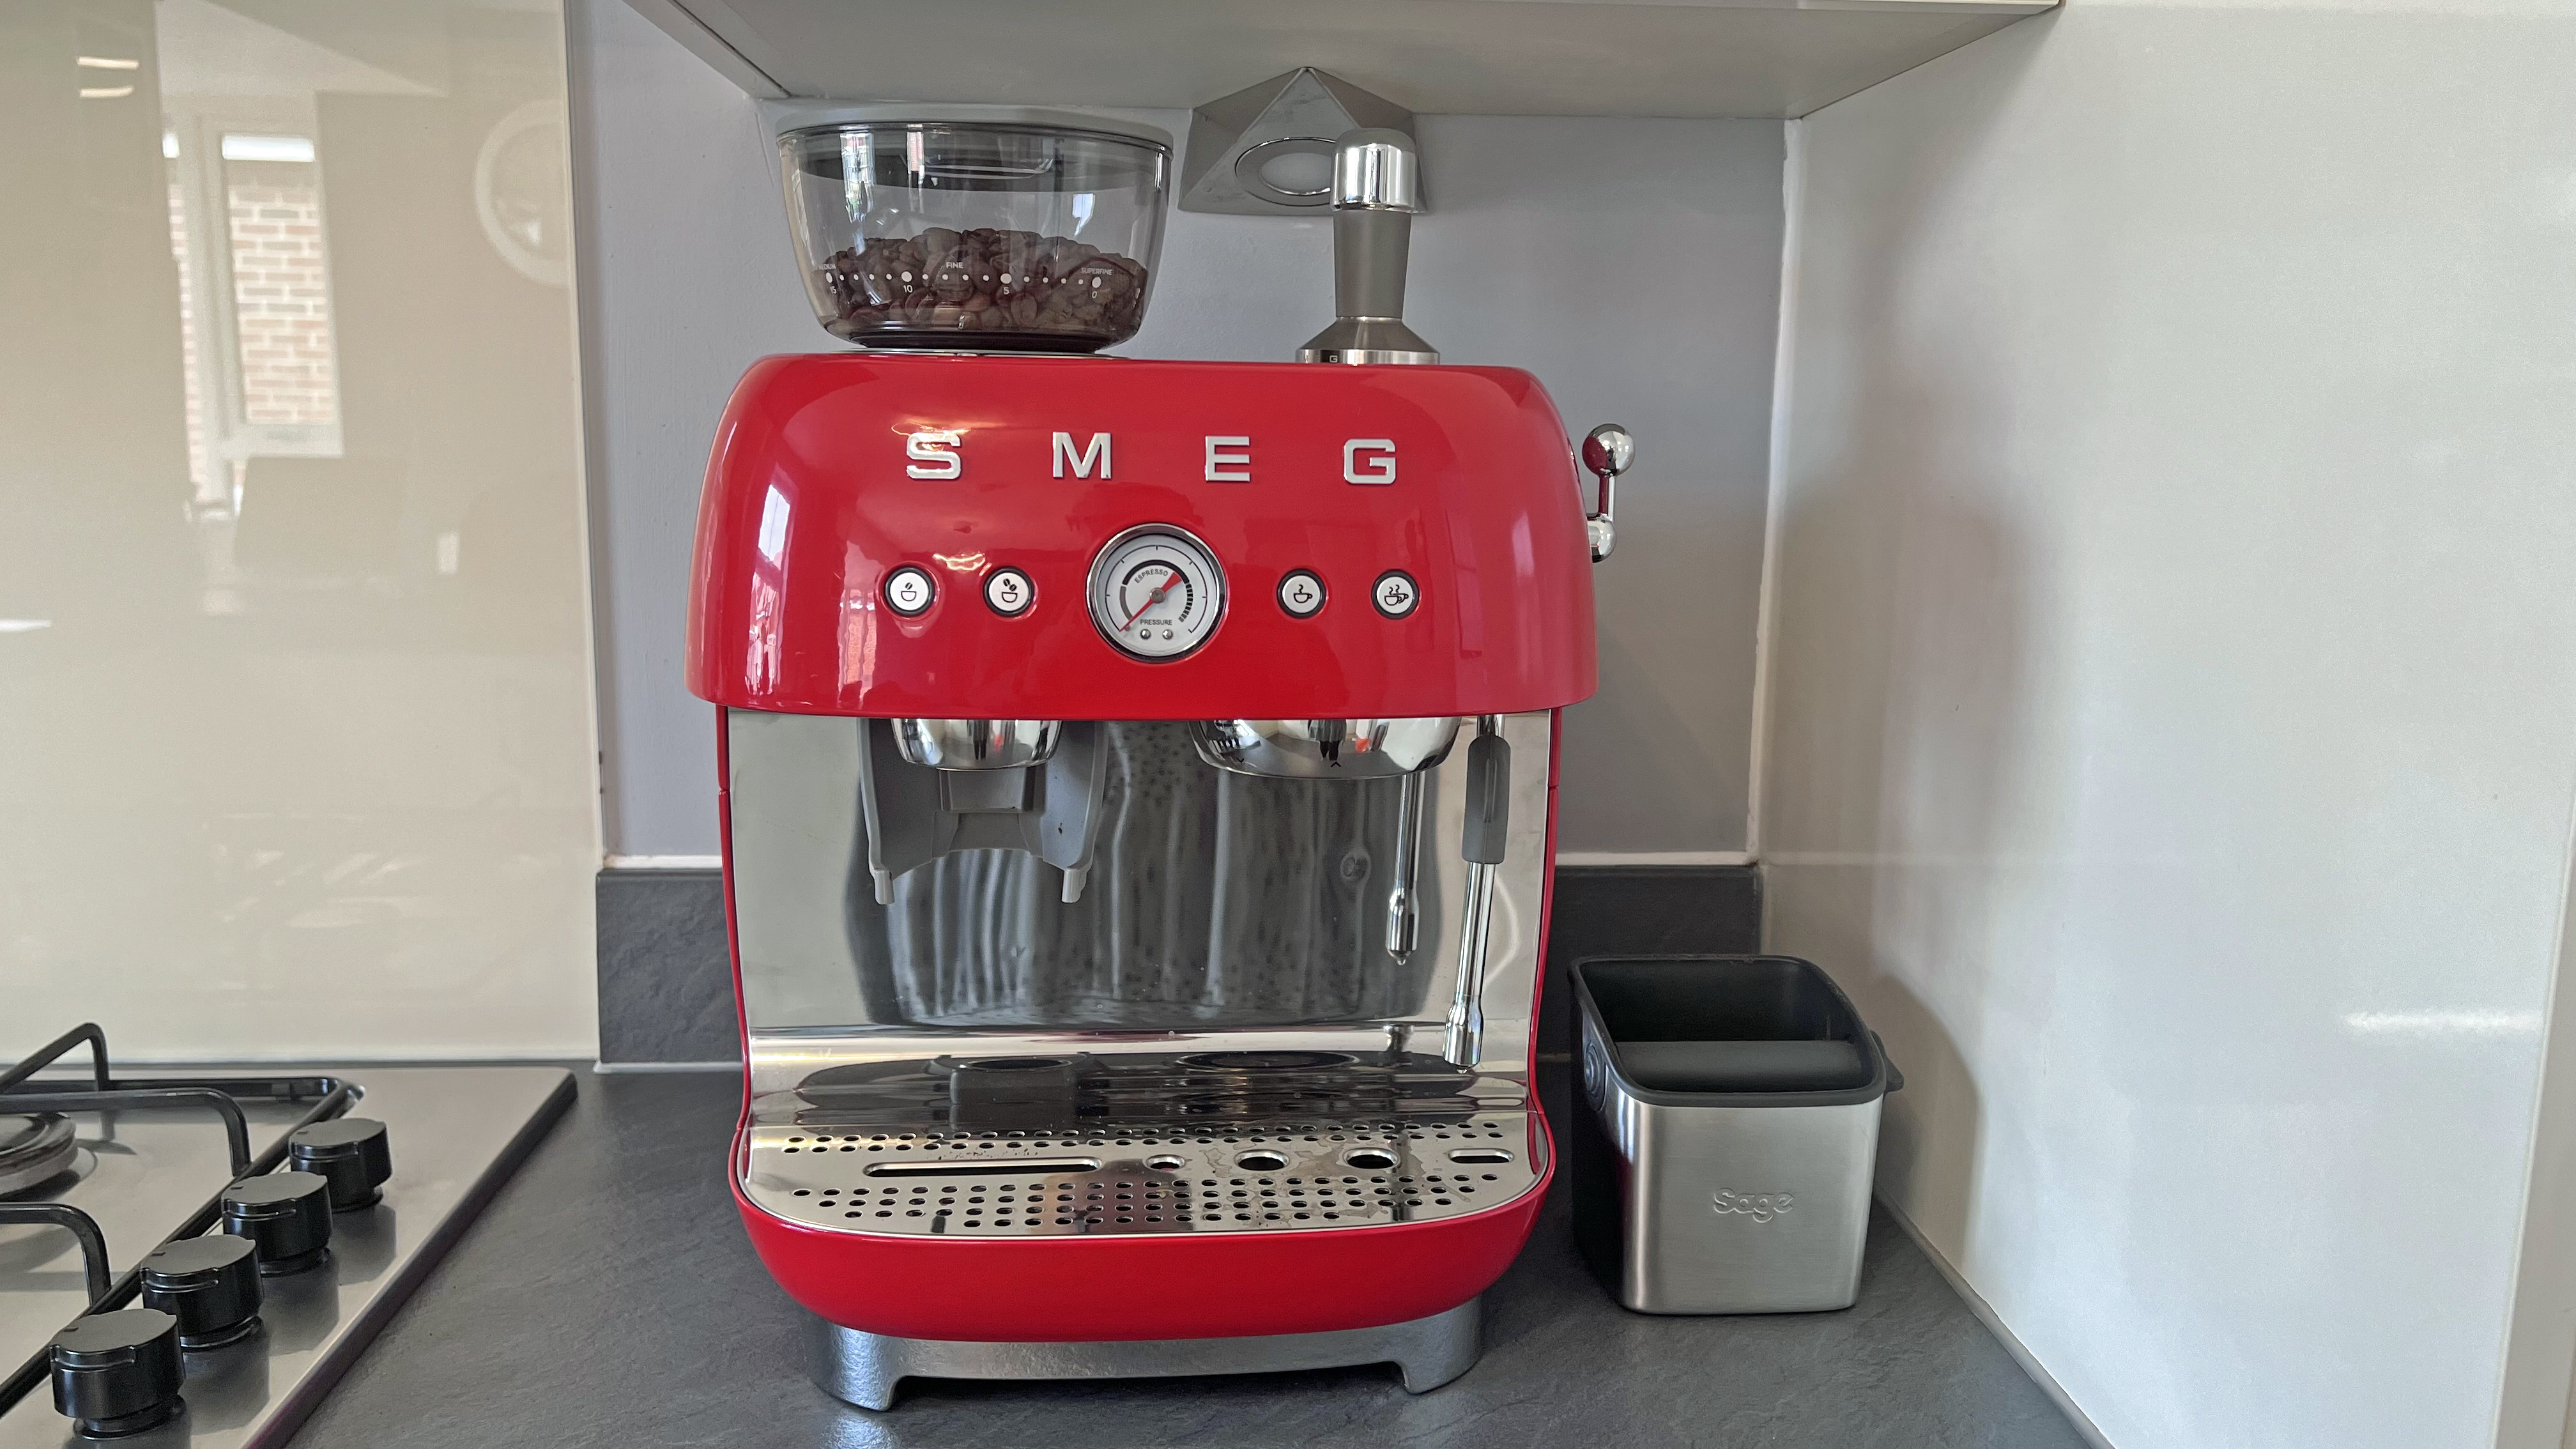 Espresso Machine Differences: Manual vs Semi-Automatic vs Automatic